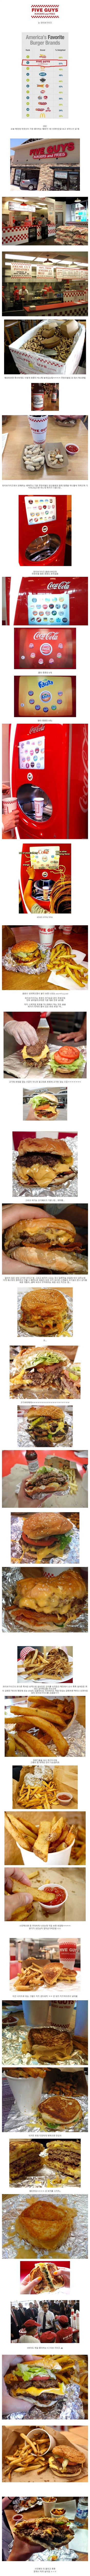 미국 2위 햄버거 브랜드 수준